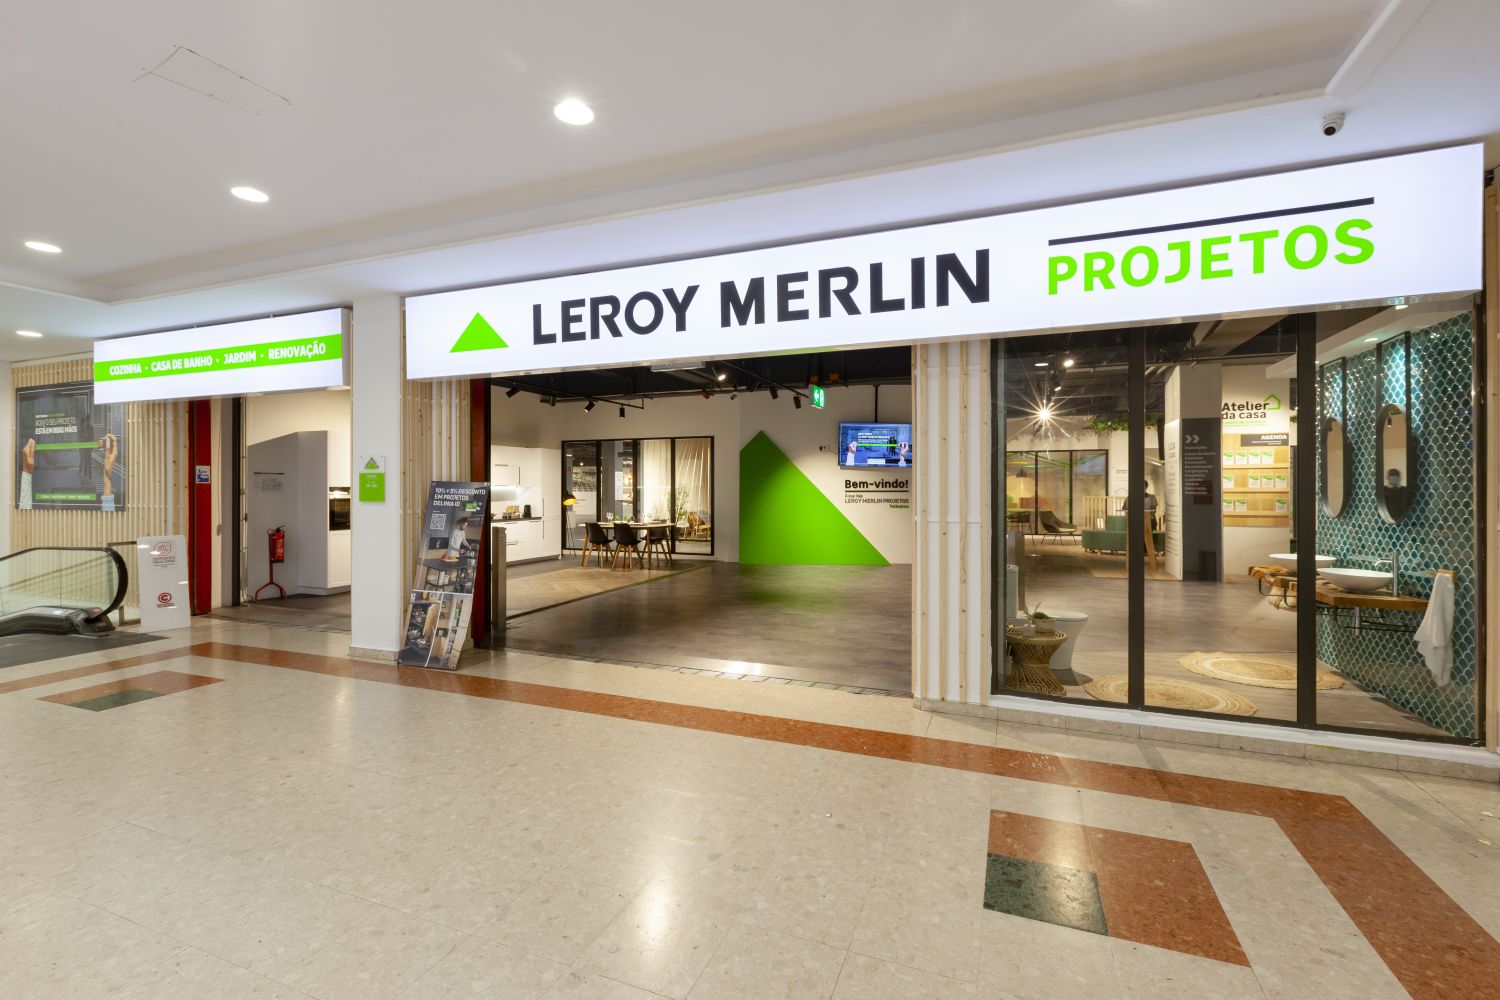 Leroy Merlin lança novo conceito de loja em Portugal (com imagens